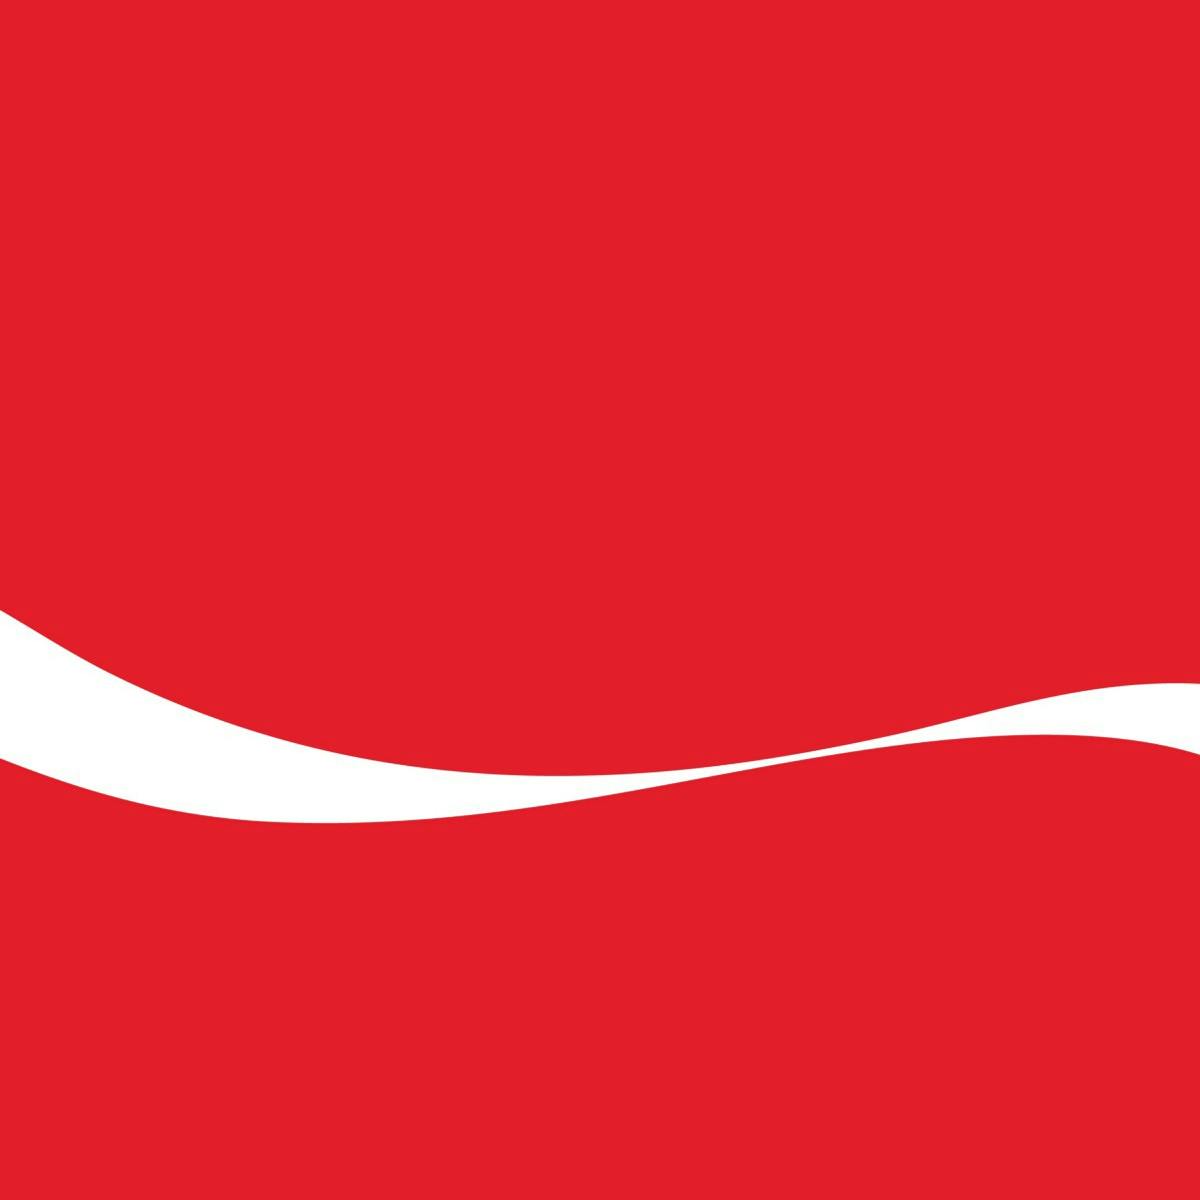 Always Coca-Cola: Coca, Kola, and the *Real* Secret Formula